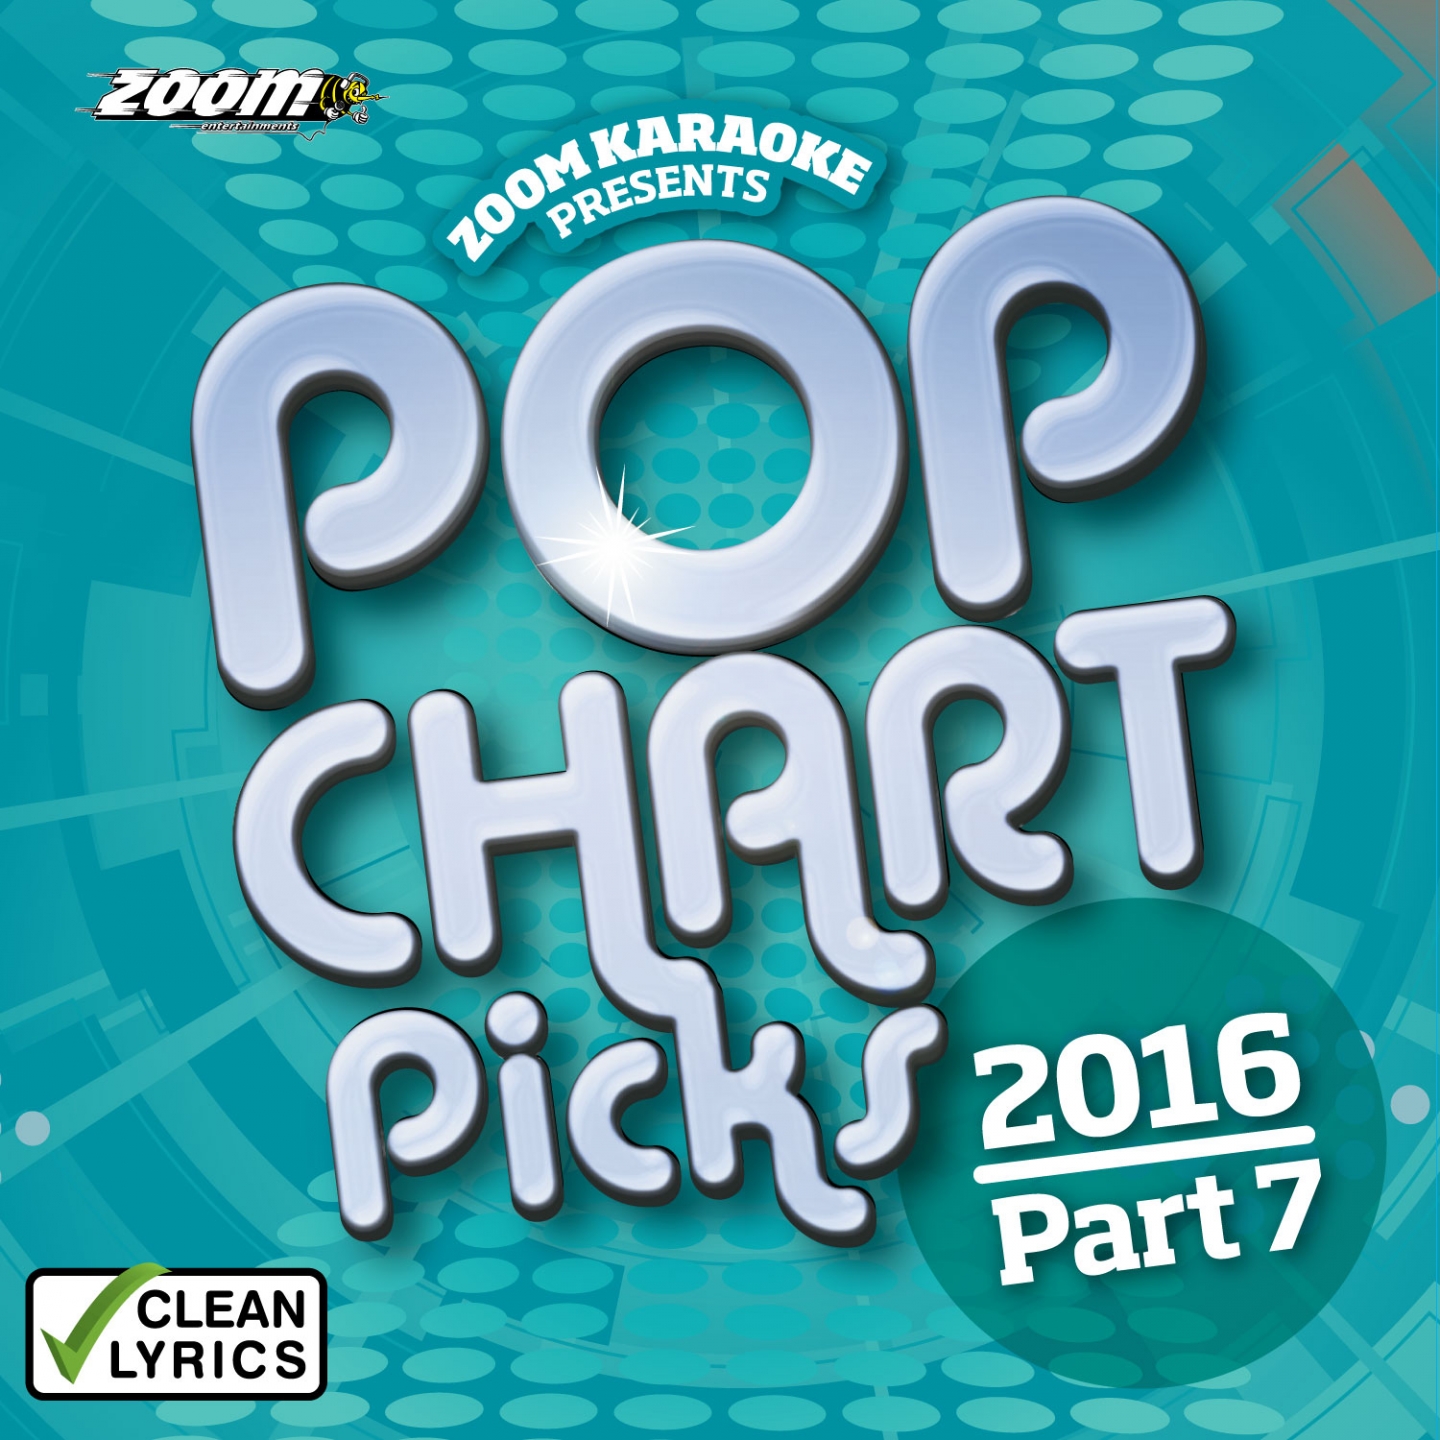 Zoom Karaoke Pop Chart Picks 2016 - Part 7